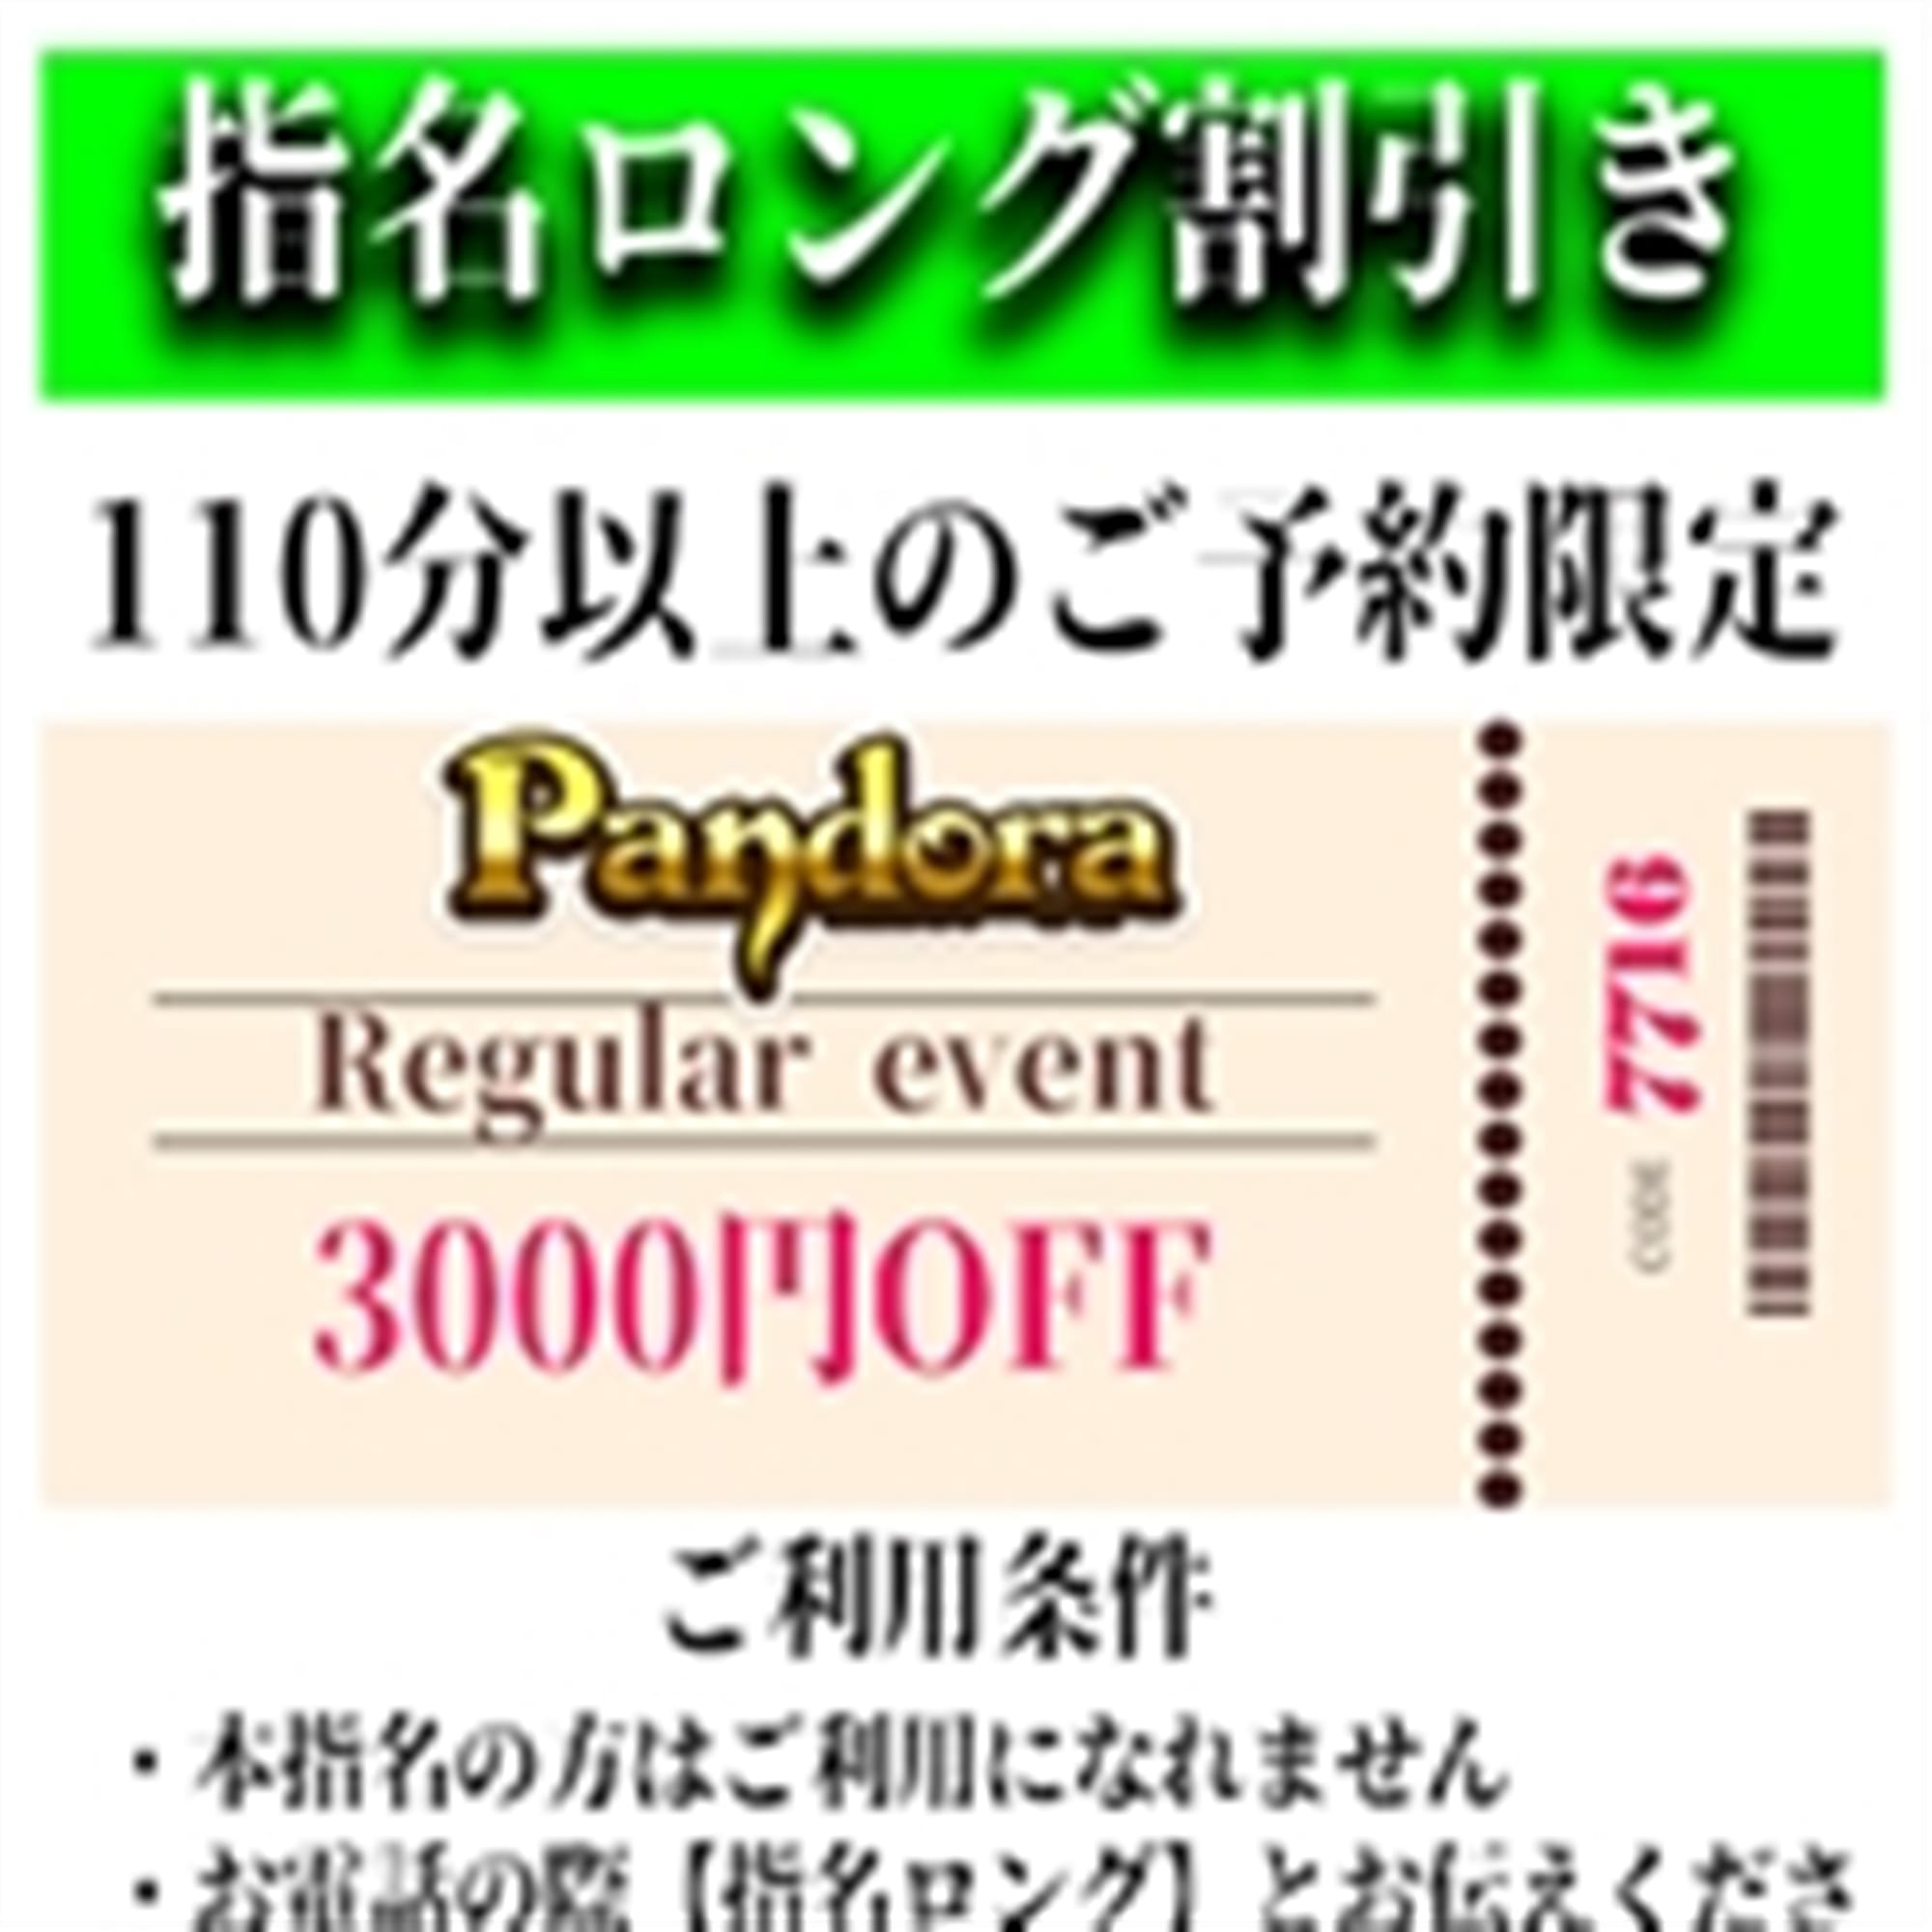 「ご指名のお客様も遊べるロングコース割引」05/12(日) 01:25 | Pandora(パンドラ)新潟のお得なニュース